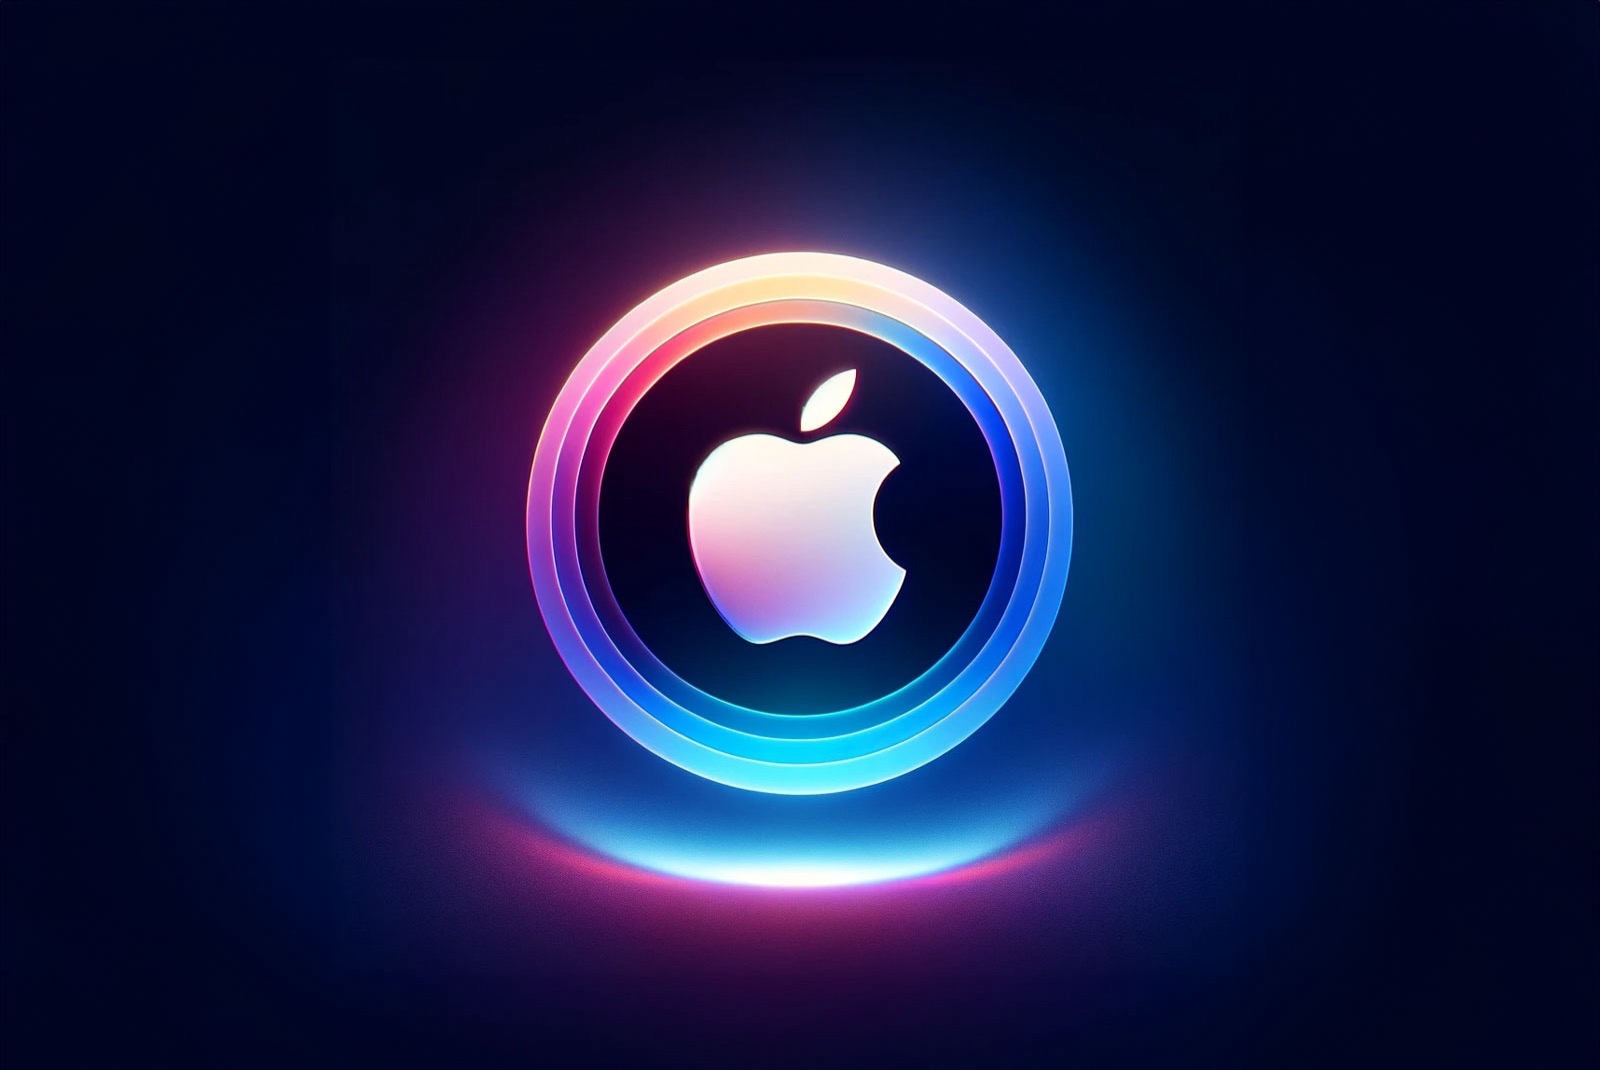 Apple-And-Siri-like-background.jpg